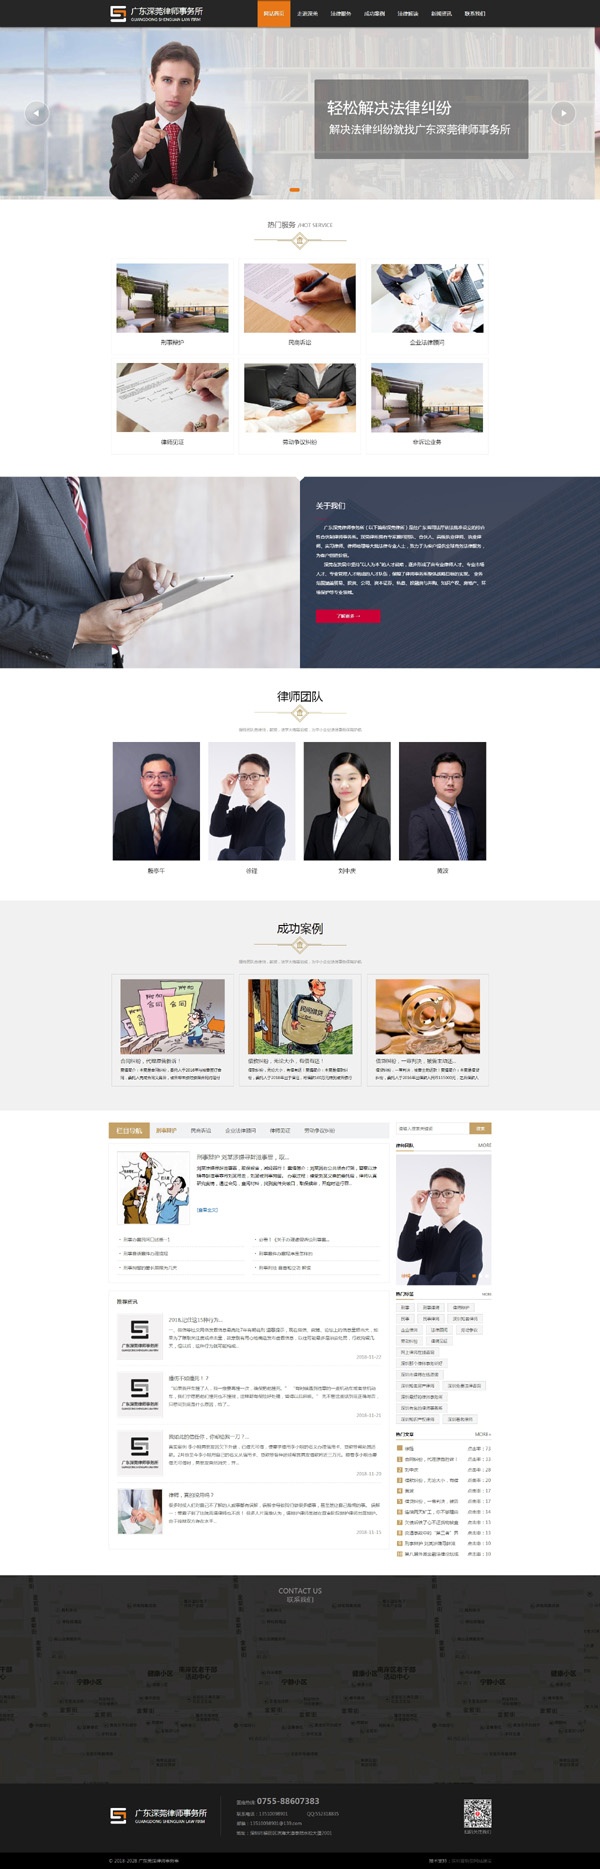 深圳律师网站建设,律师所网站建设,律师事务所网站建设